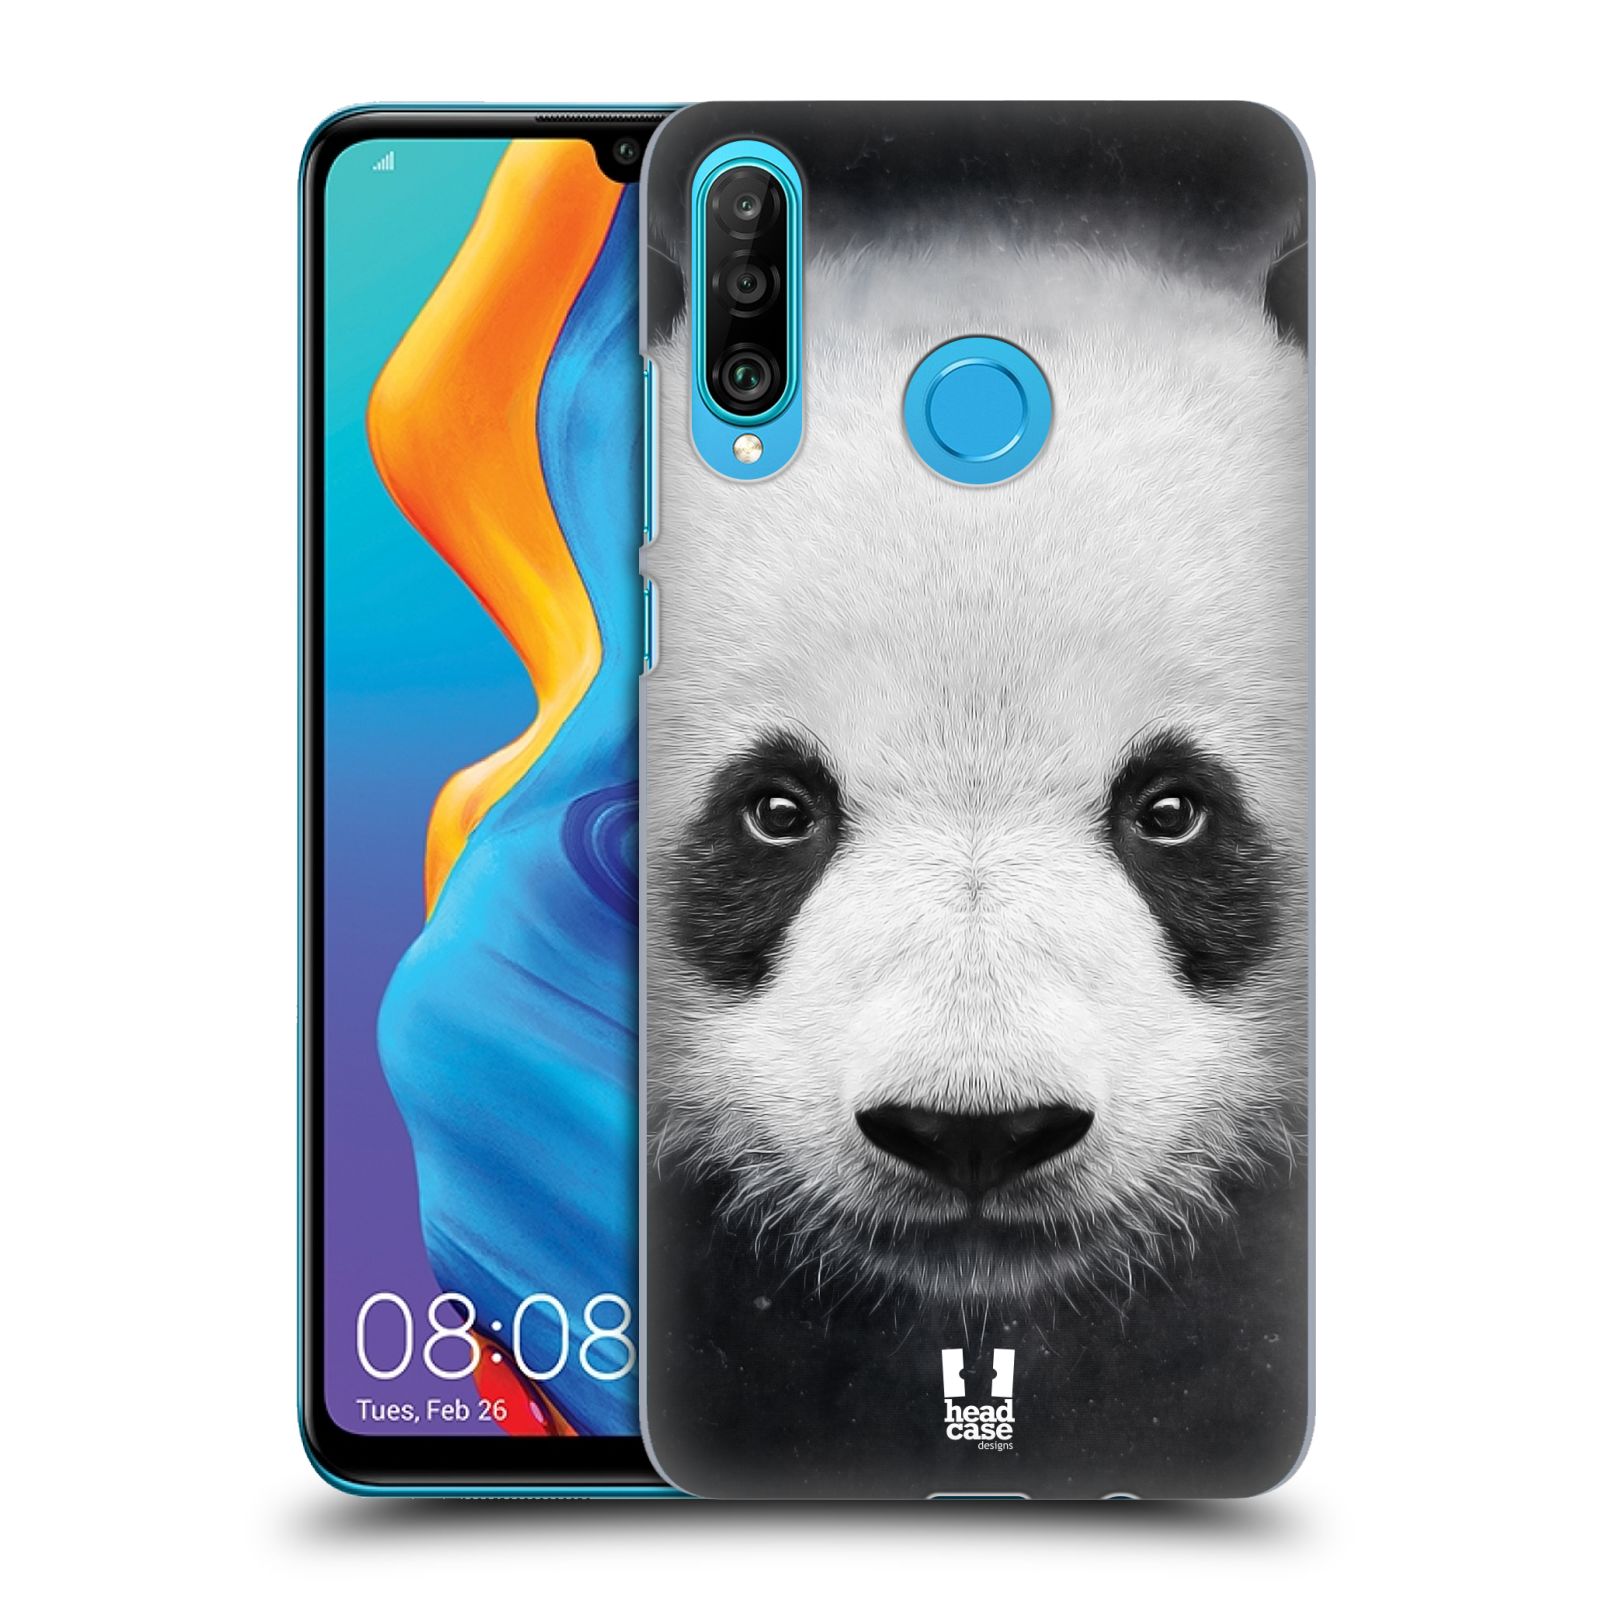 Pouzdro na mobil Huawei P30 LITE - HEAD CASE - vzor Zvířecí tváře medvěd panda